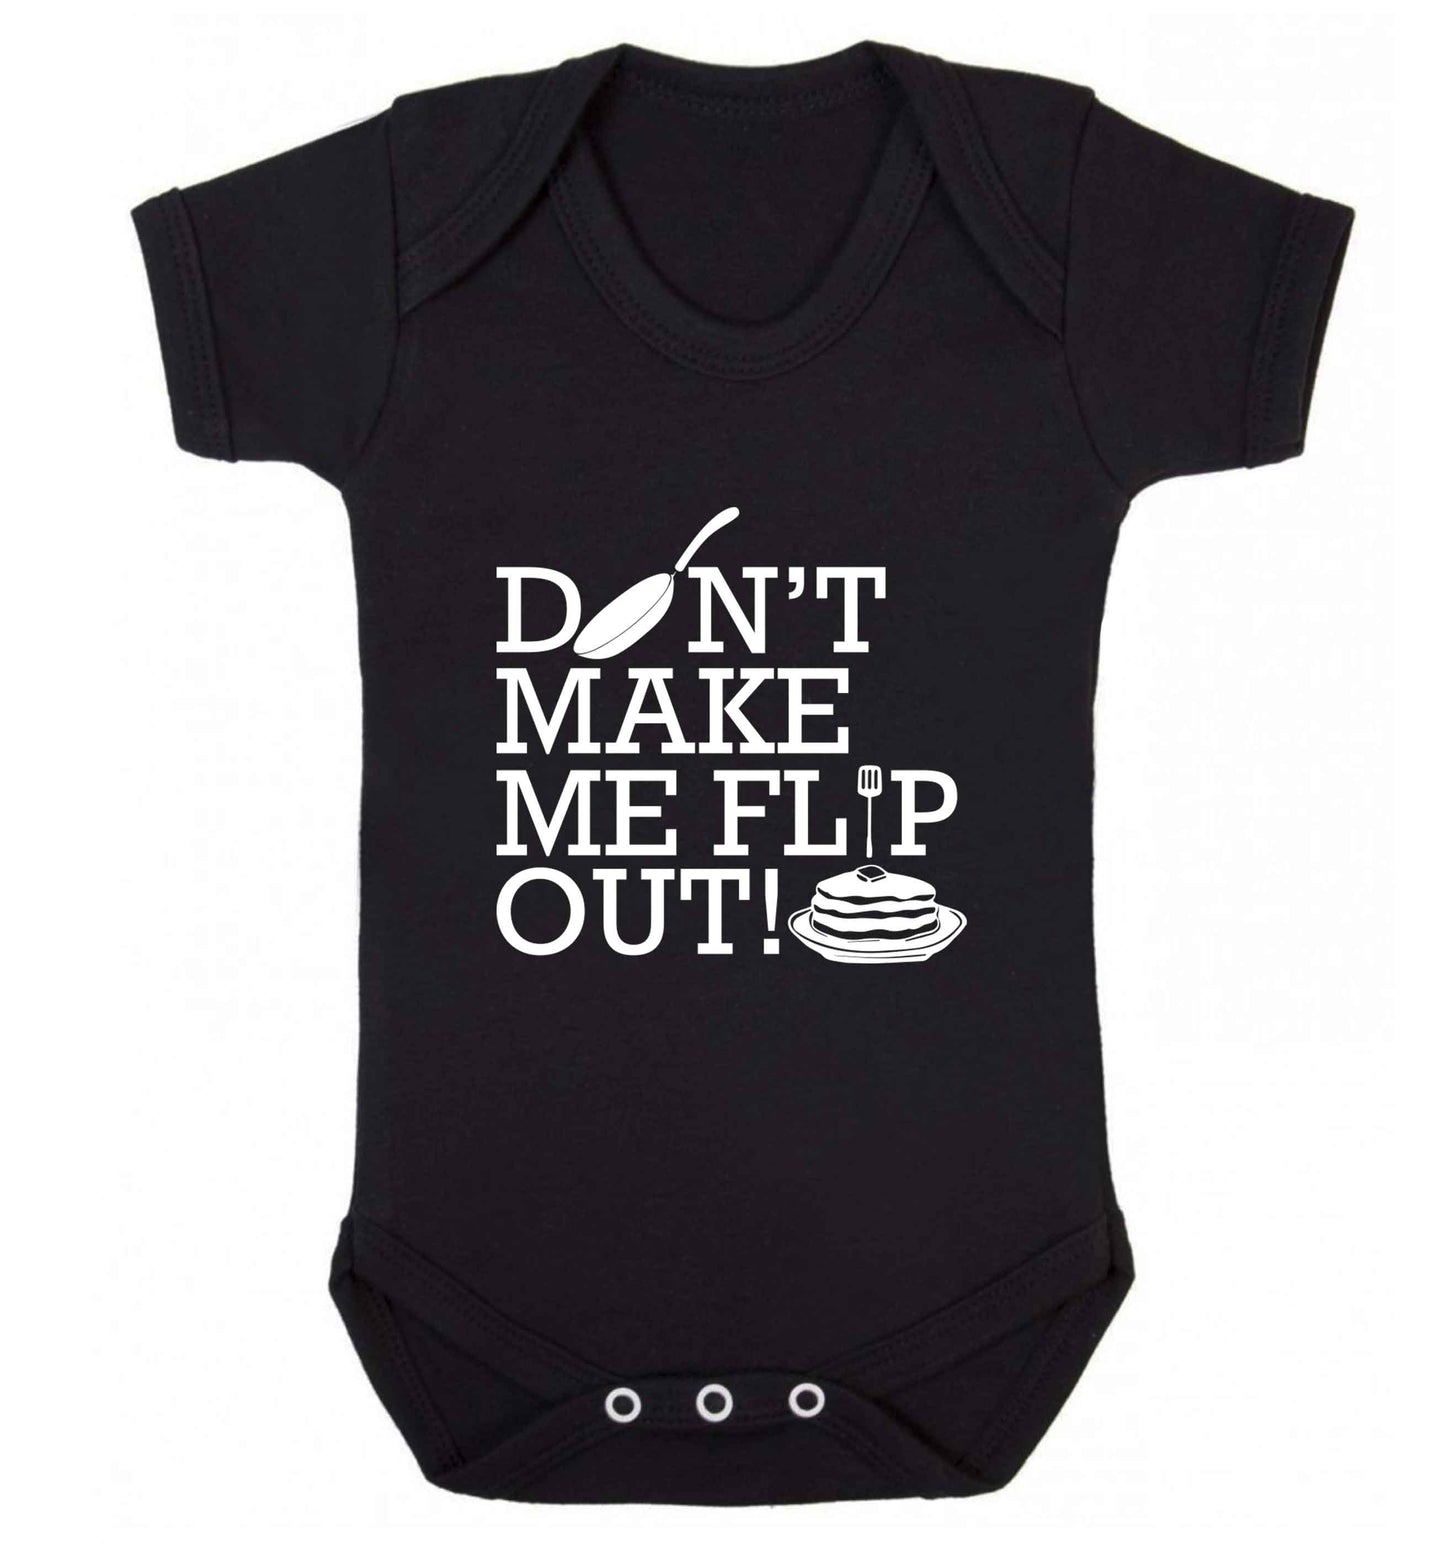 Don't make me flip out baby vest black 18-24 months